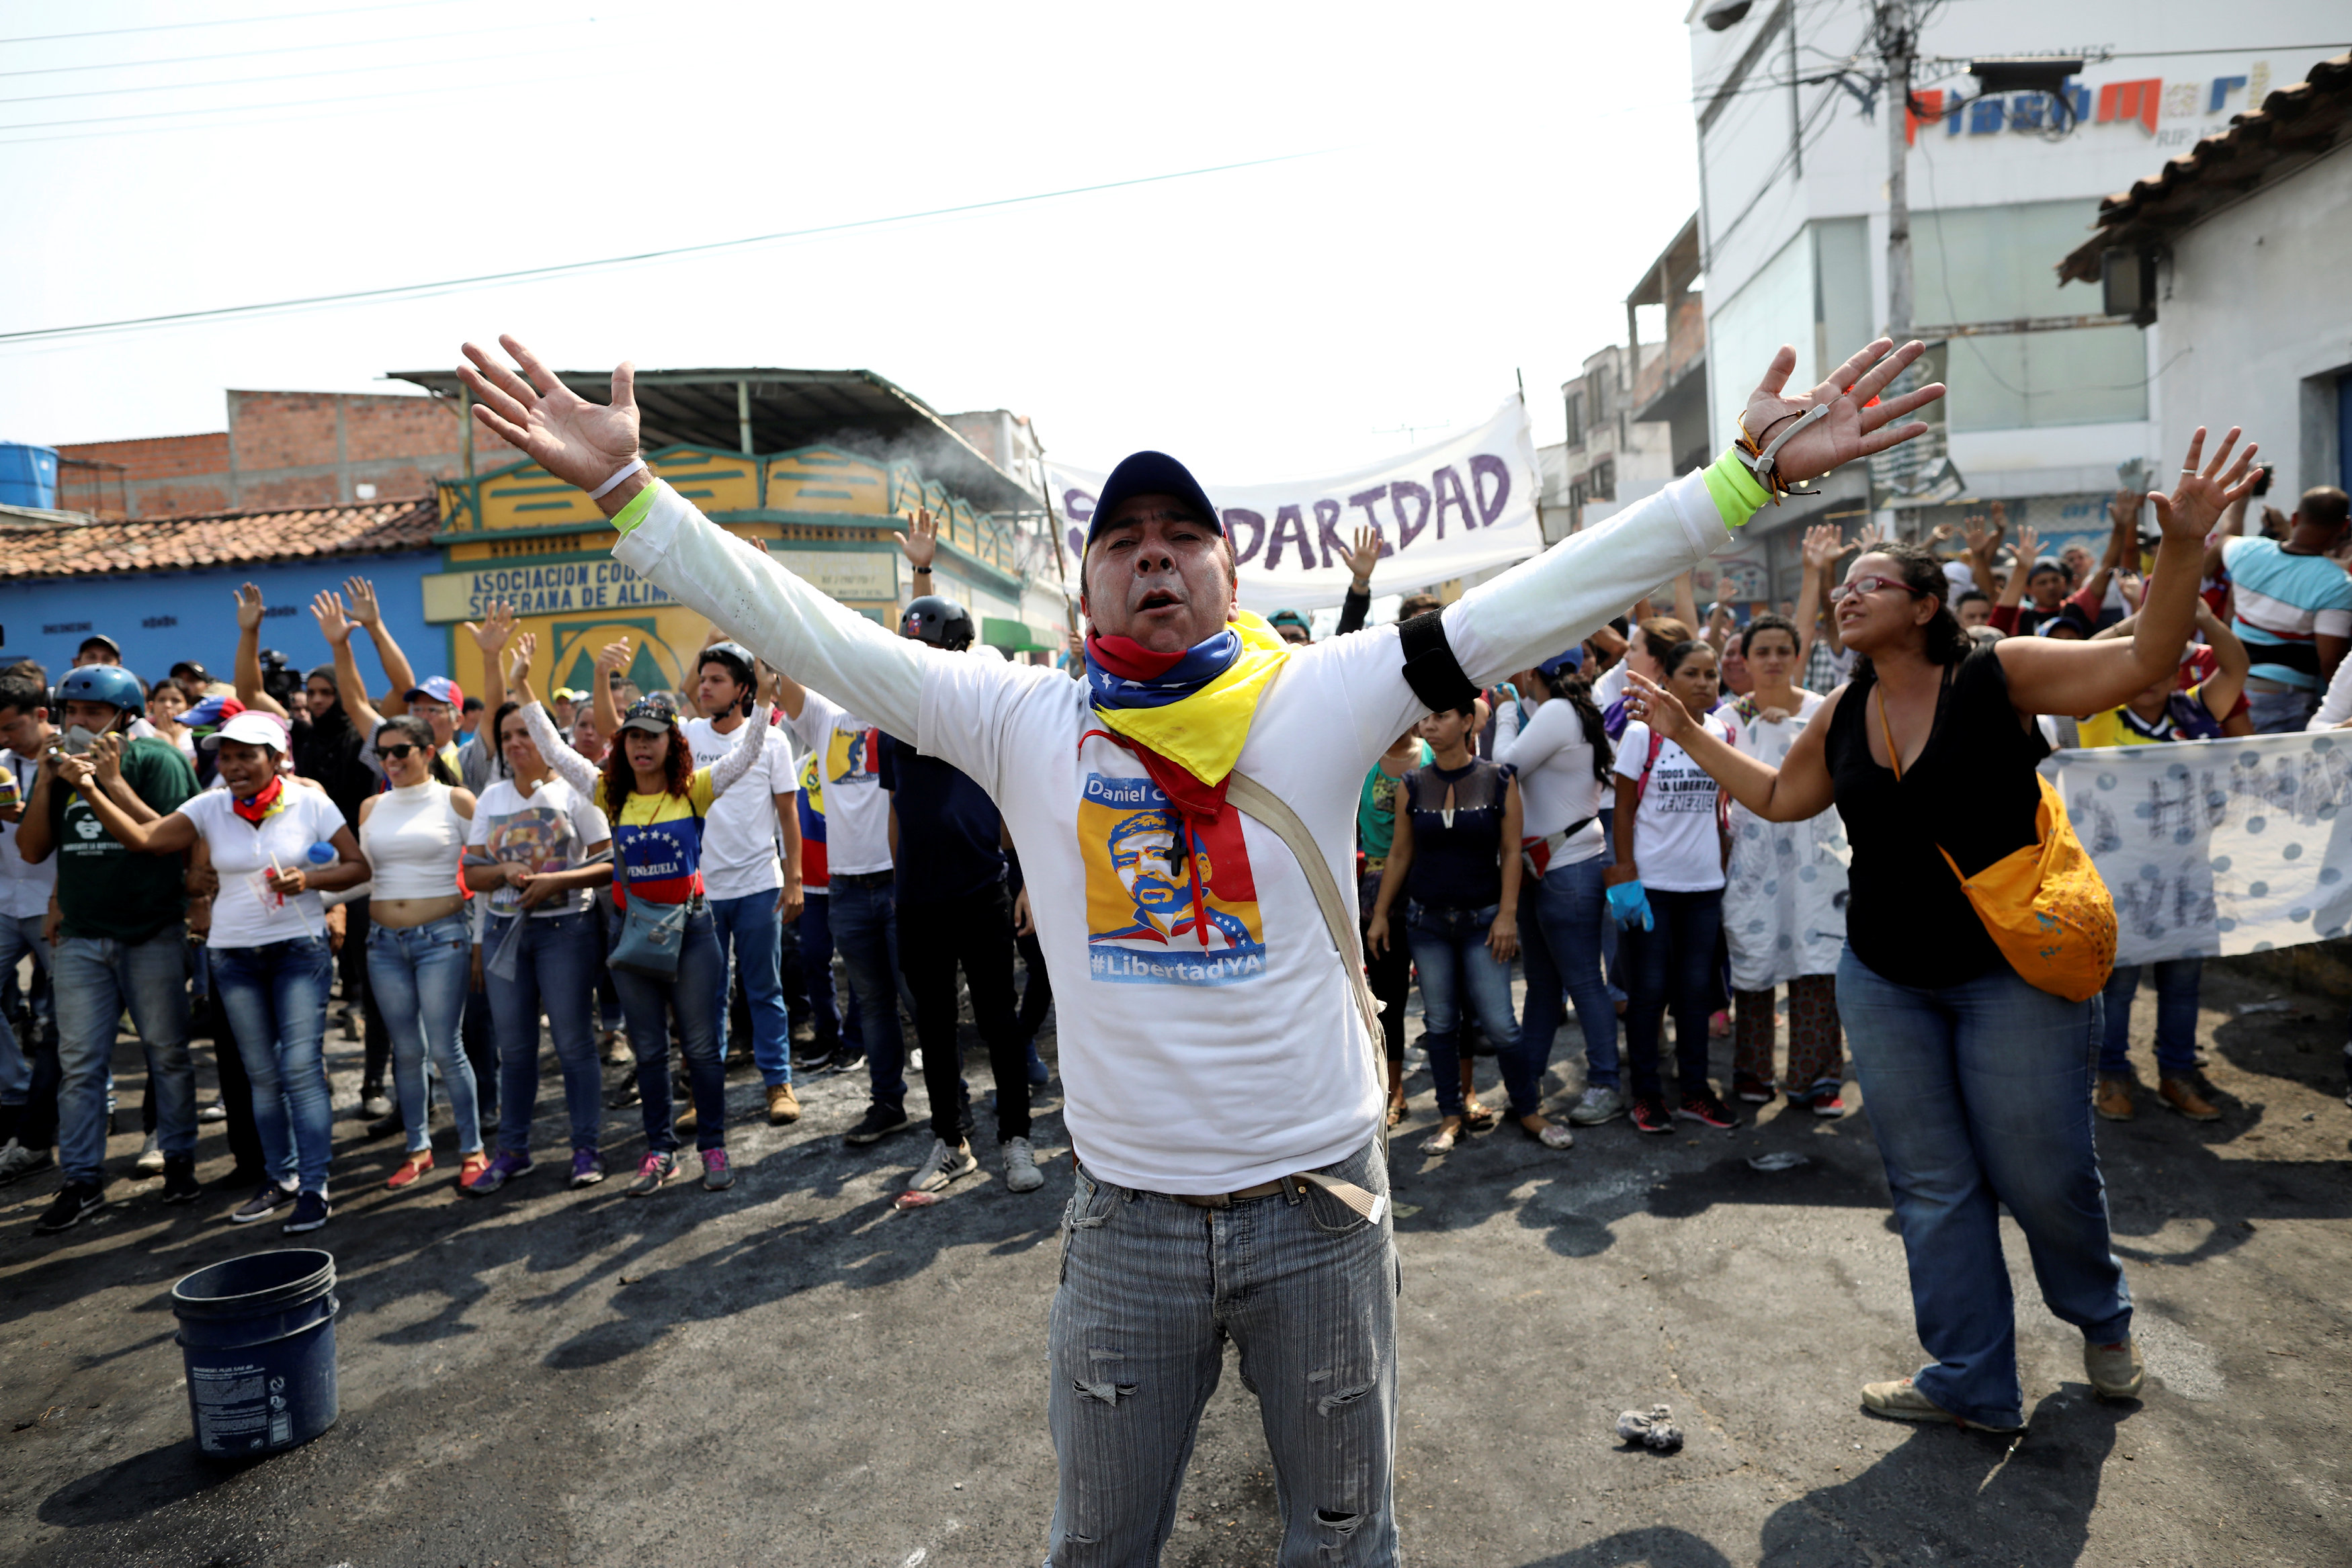 Impactantes FOTOS de lo que ocurre en Venezuela #23Feb